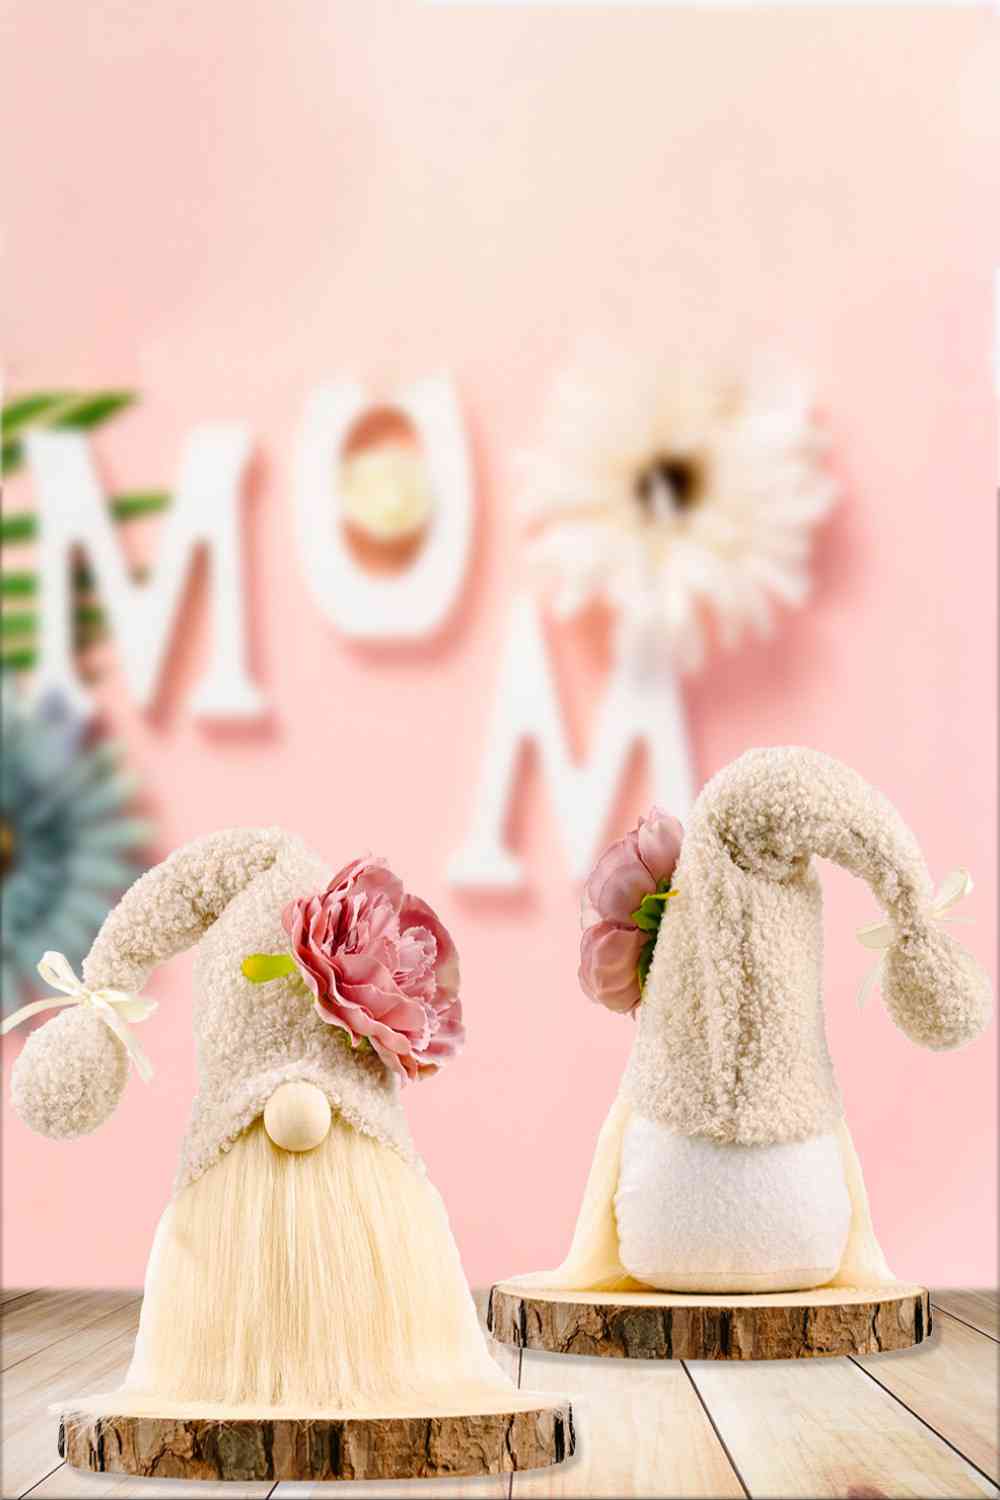 Décoration florale pour la fête des mères, garniture à pompons, Gnome sans visage